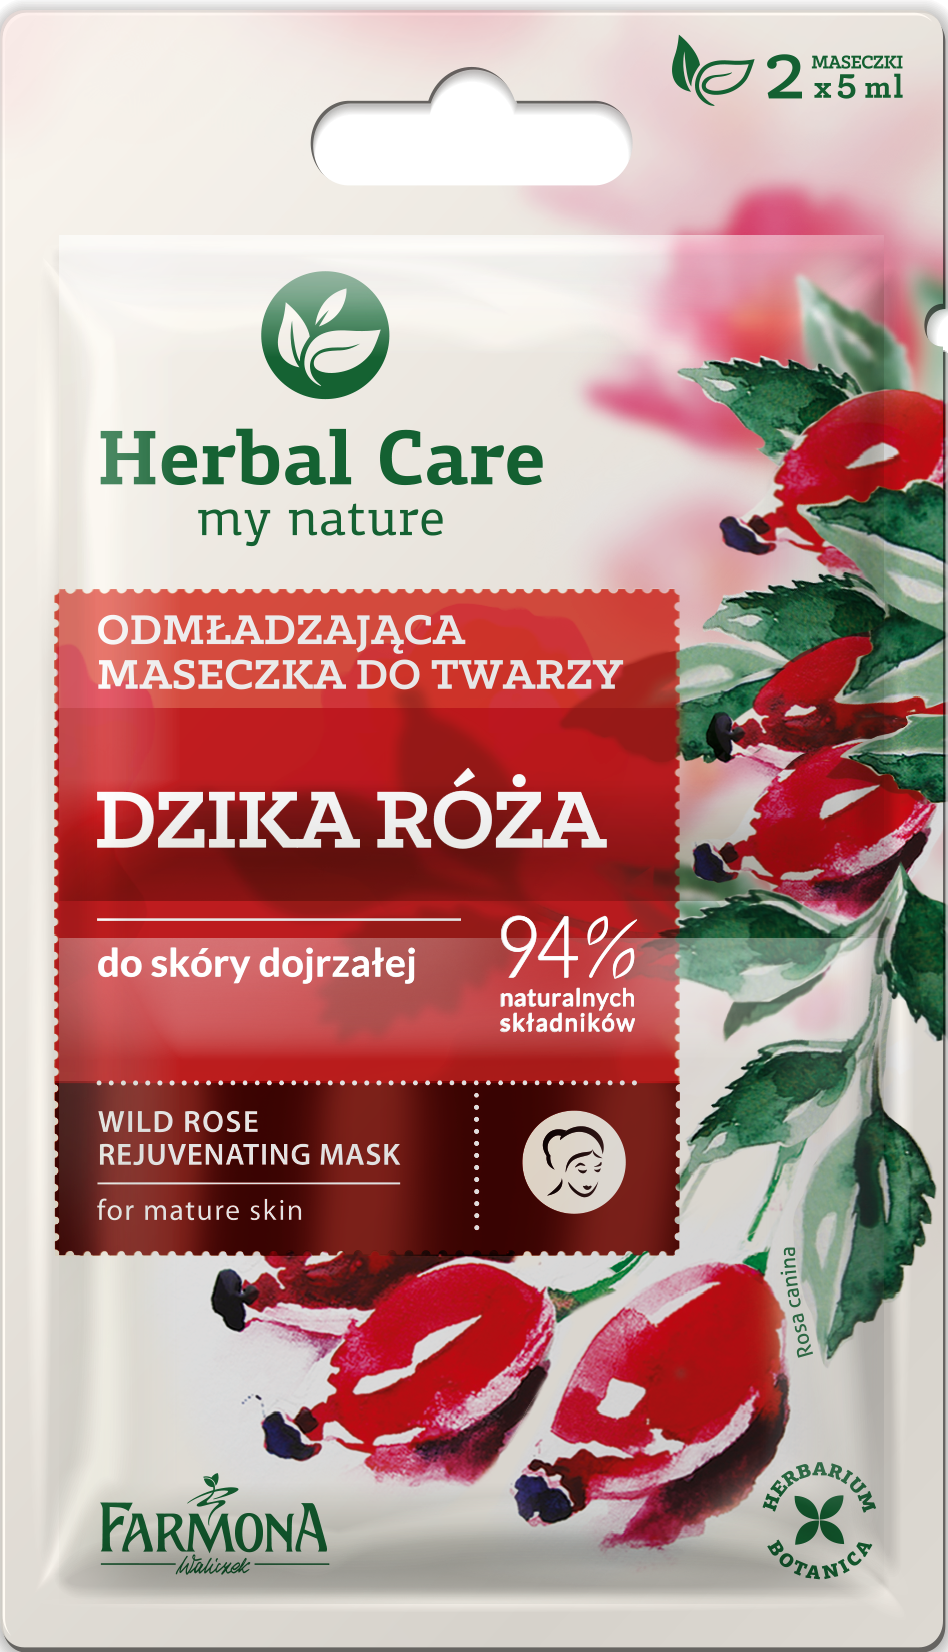 Farmona_Herbal_Care_double_maseczki_ROZA